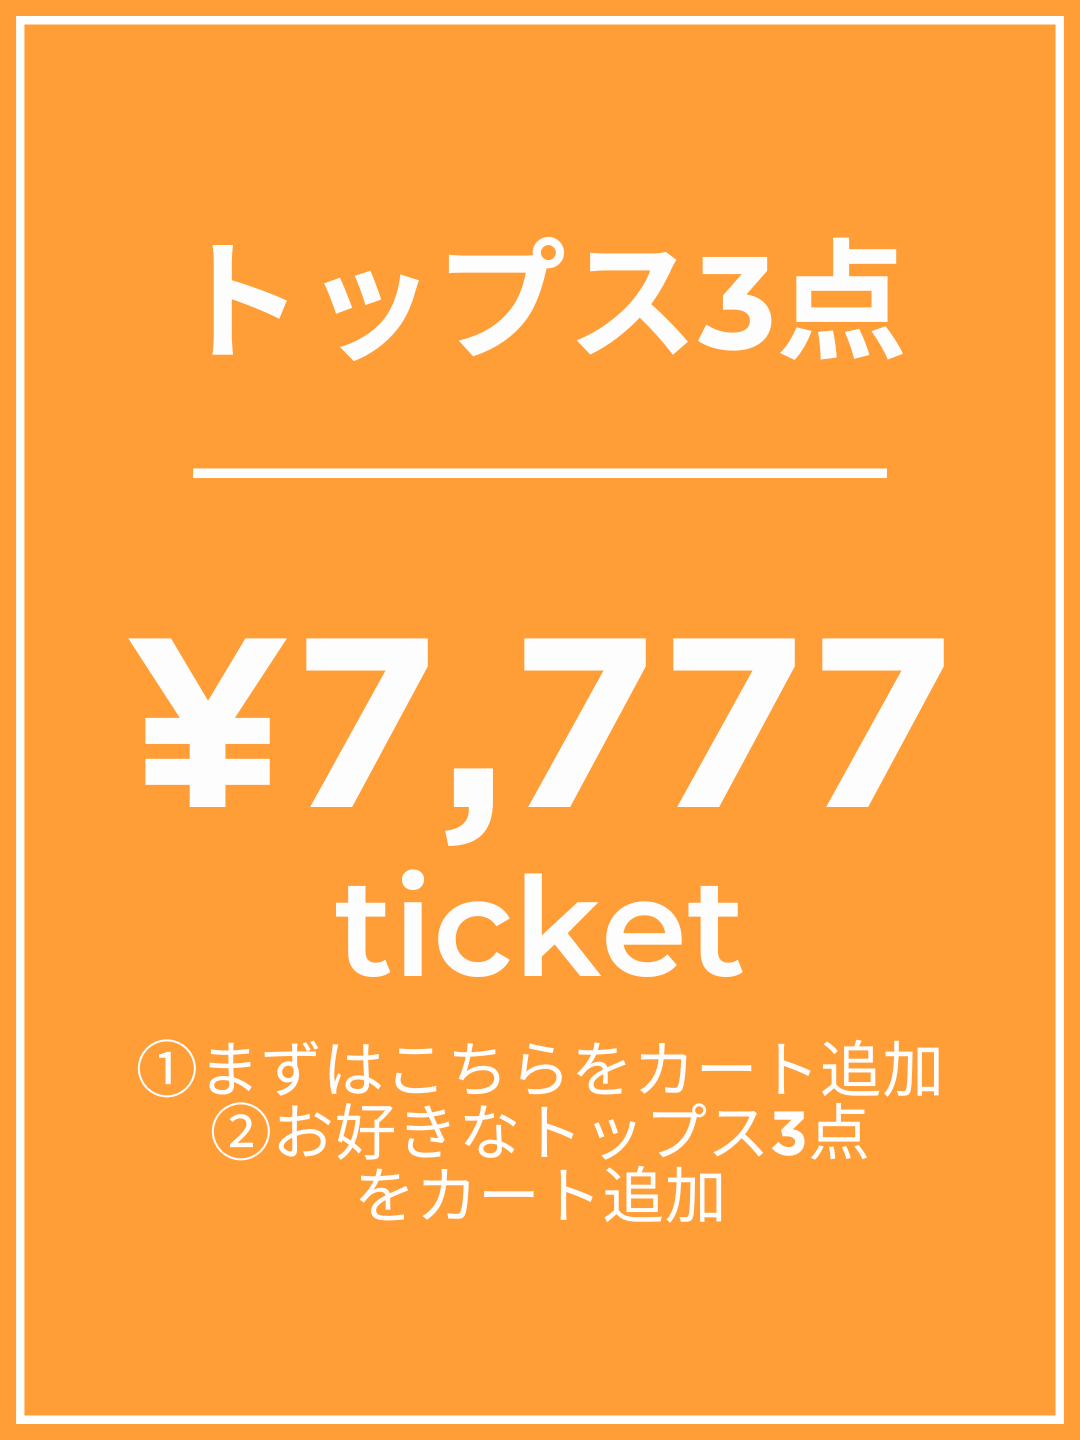 【1番初めにこちらをカートイン】¥7,777チケット